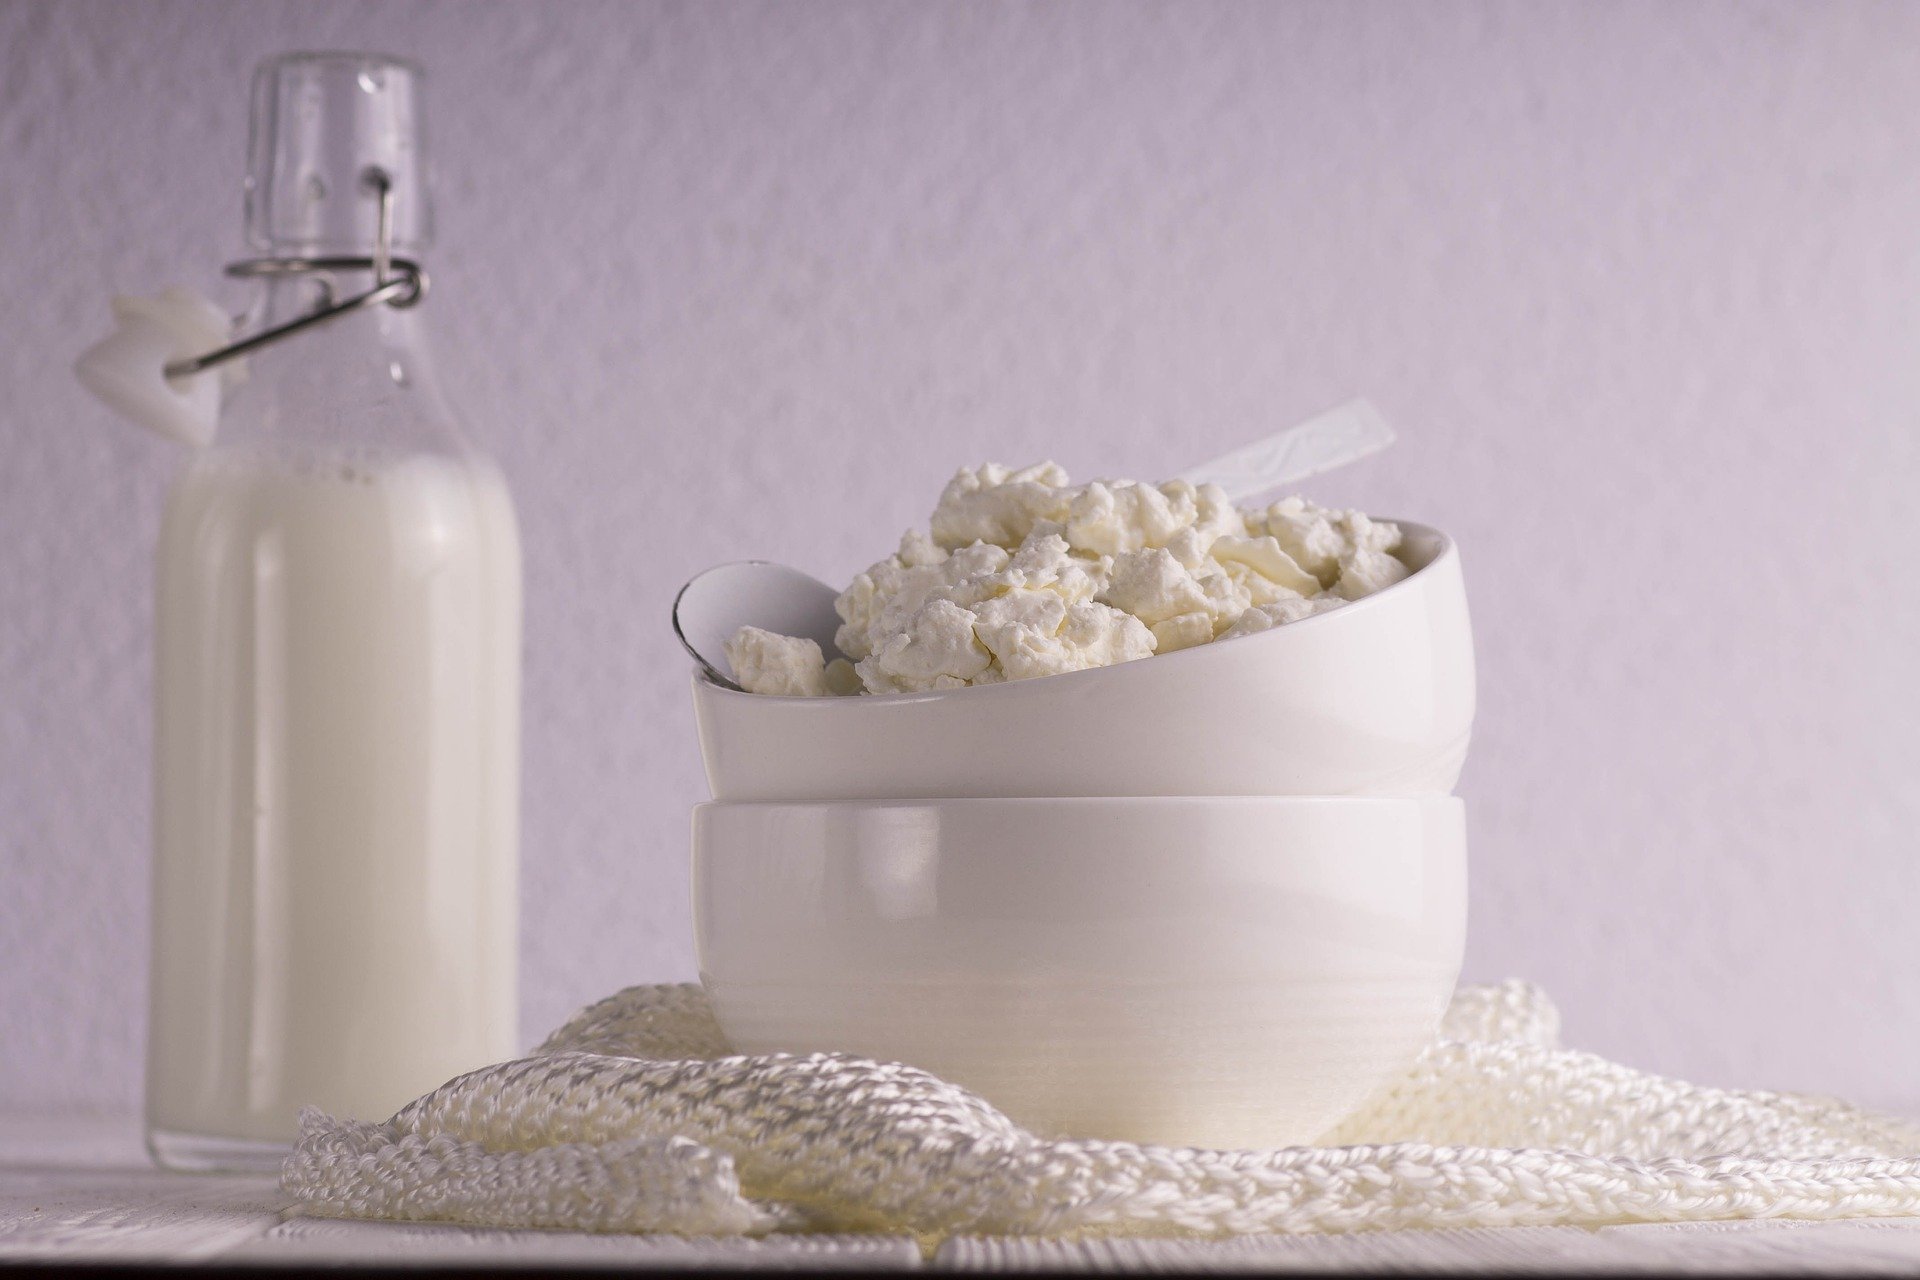 Consumo di latte e derivati ed effetti sulla salute: una umbrella review di studi osservazionali